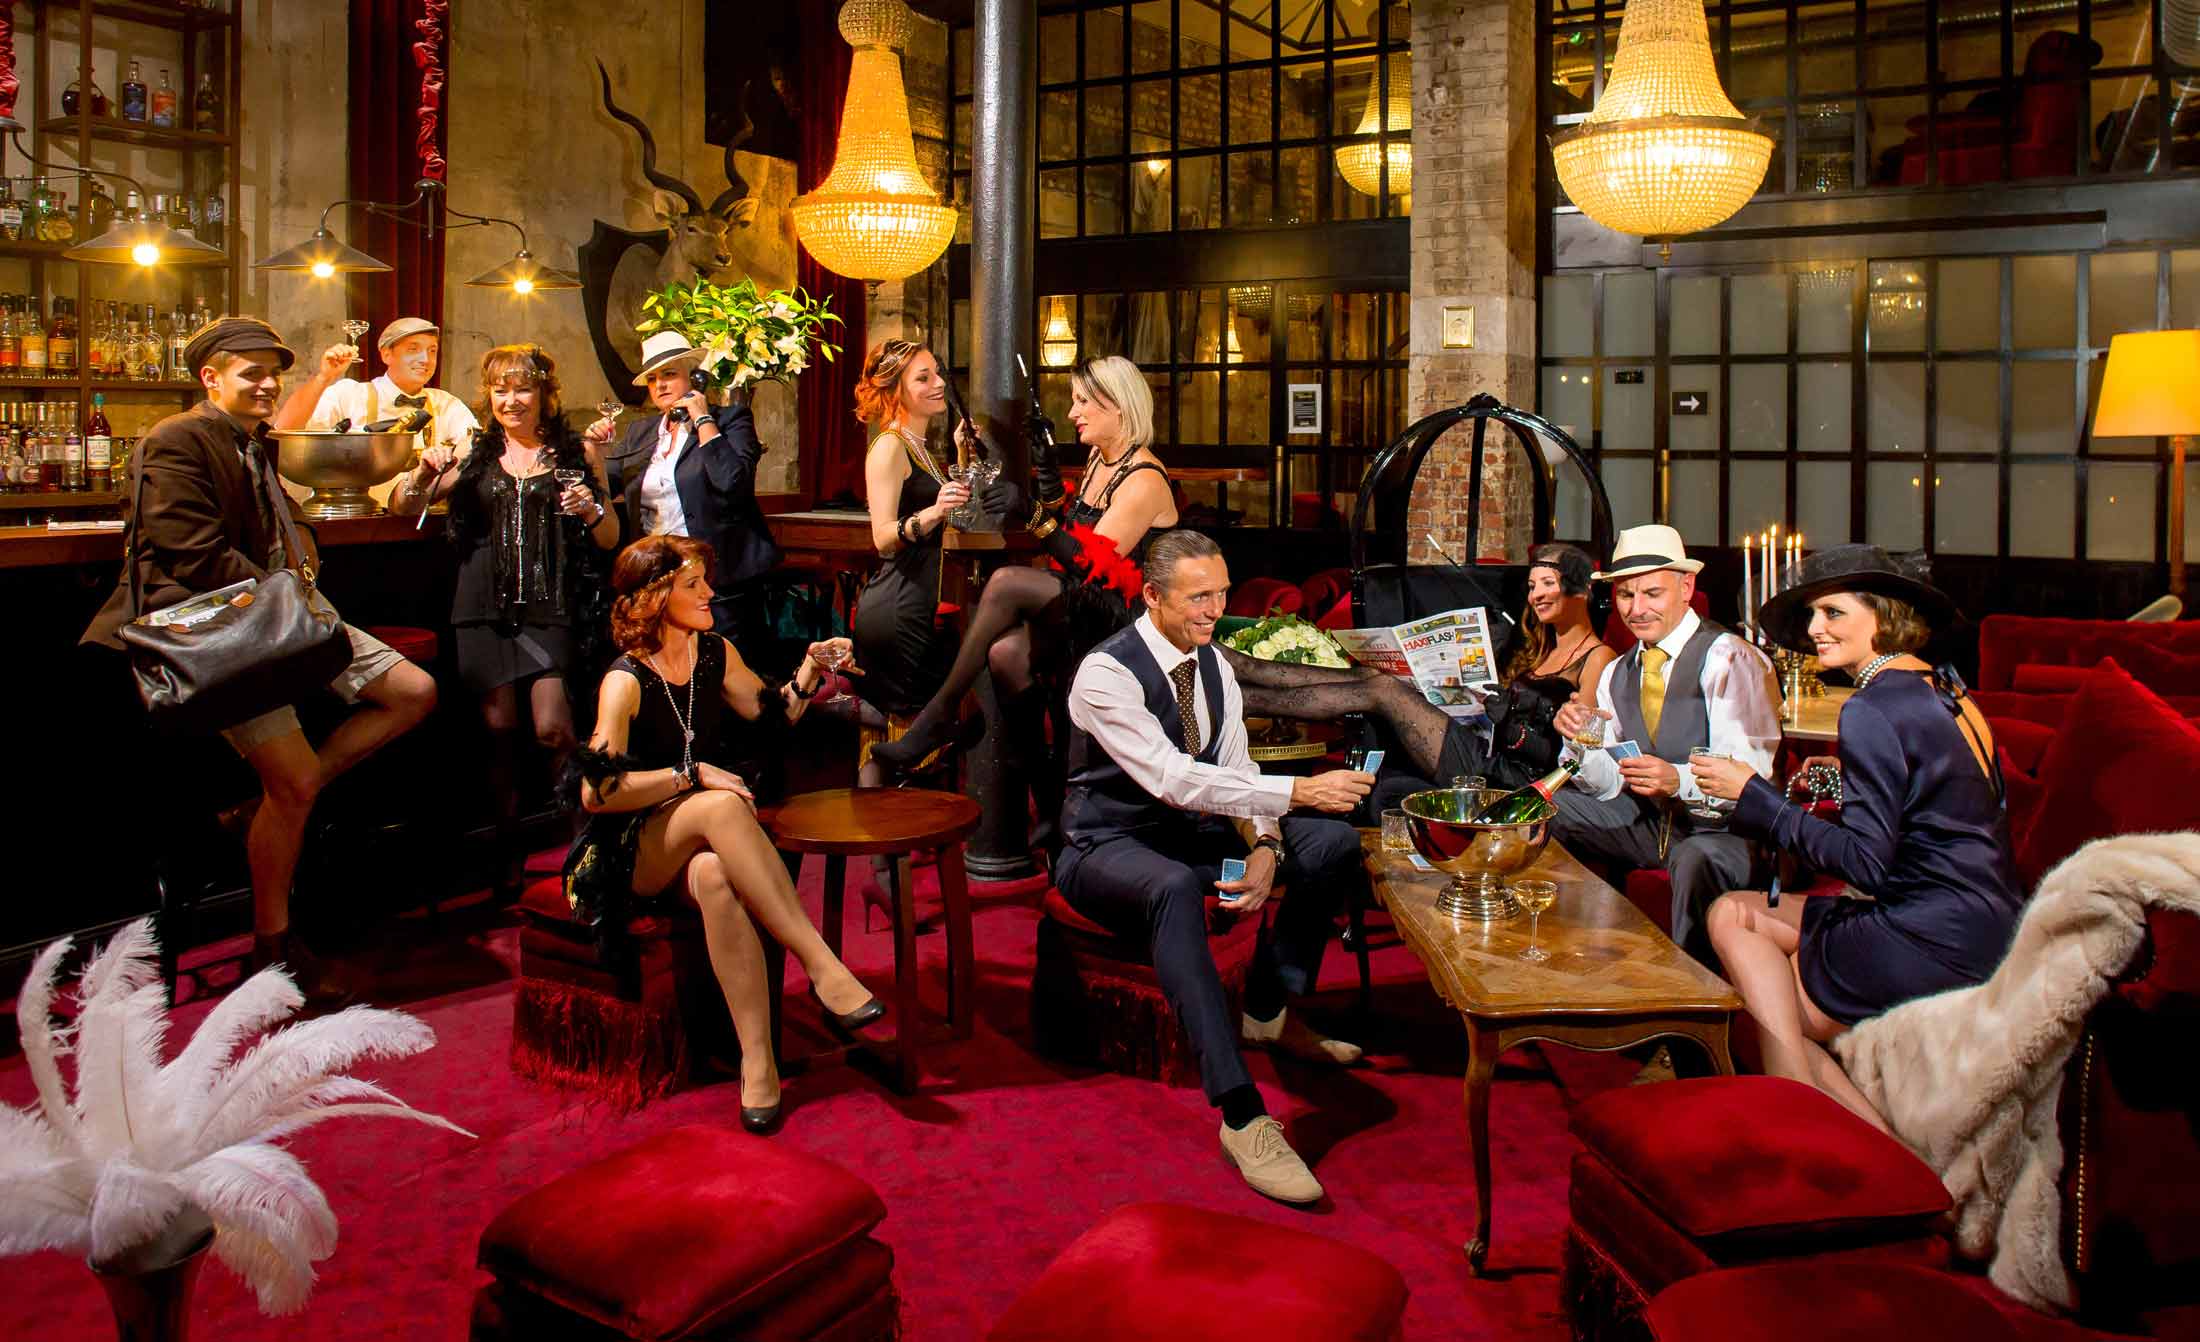 Mise en scène ambiance années 30 dans un bar clandestin de l'équipe MaxiFlash - Photographe portrait d'entreprise strasbourg alsace